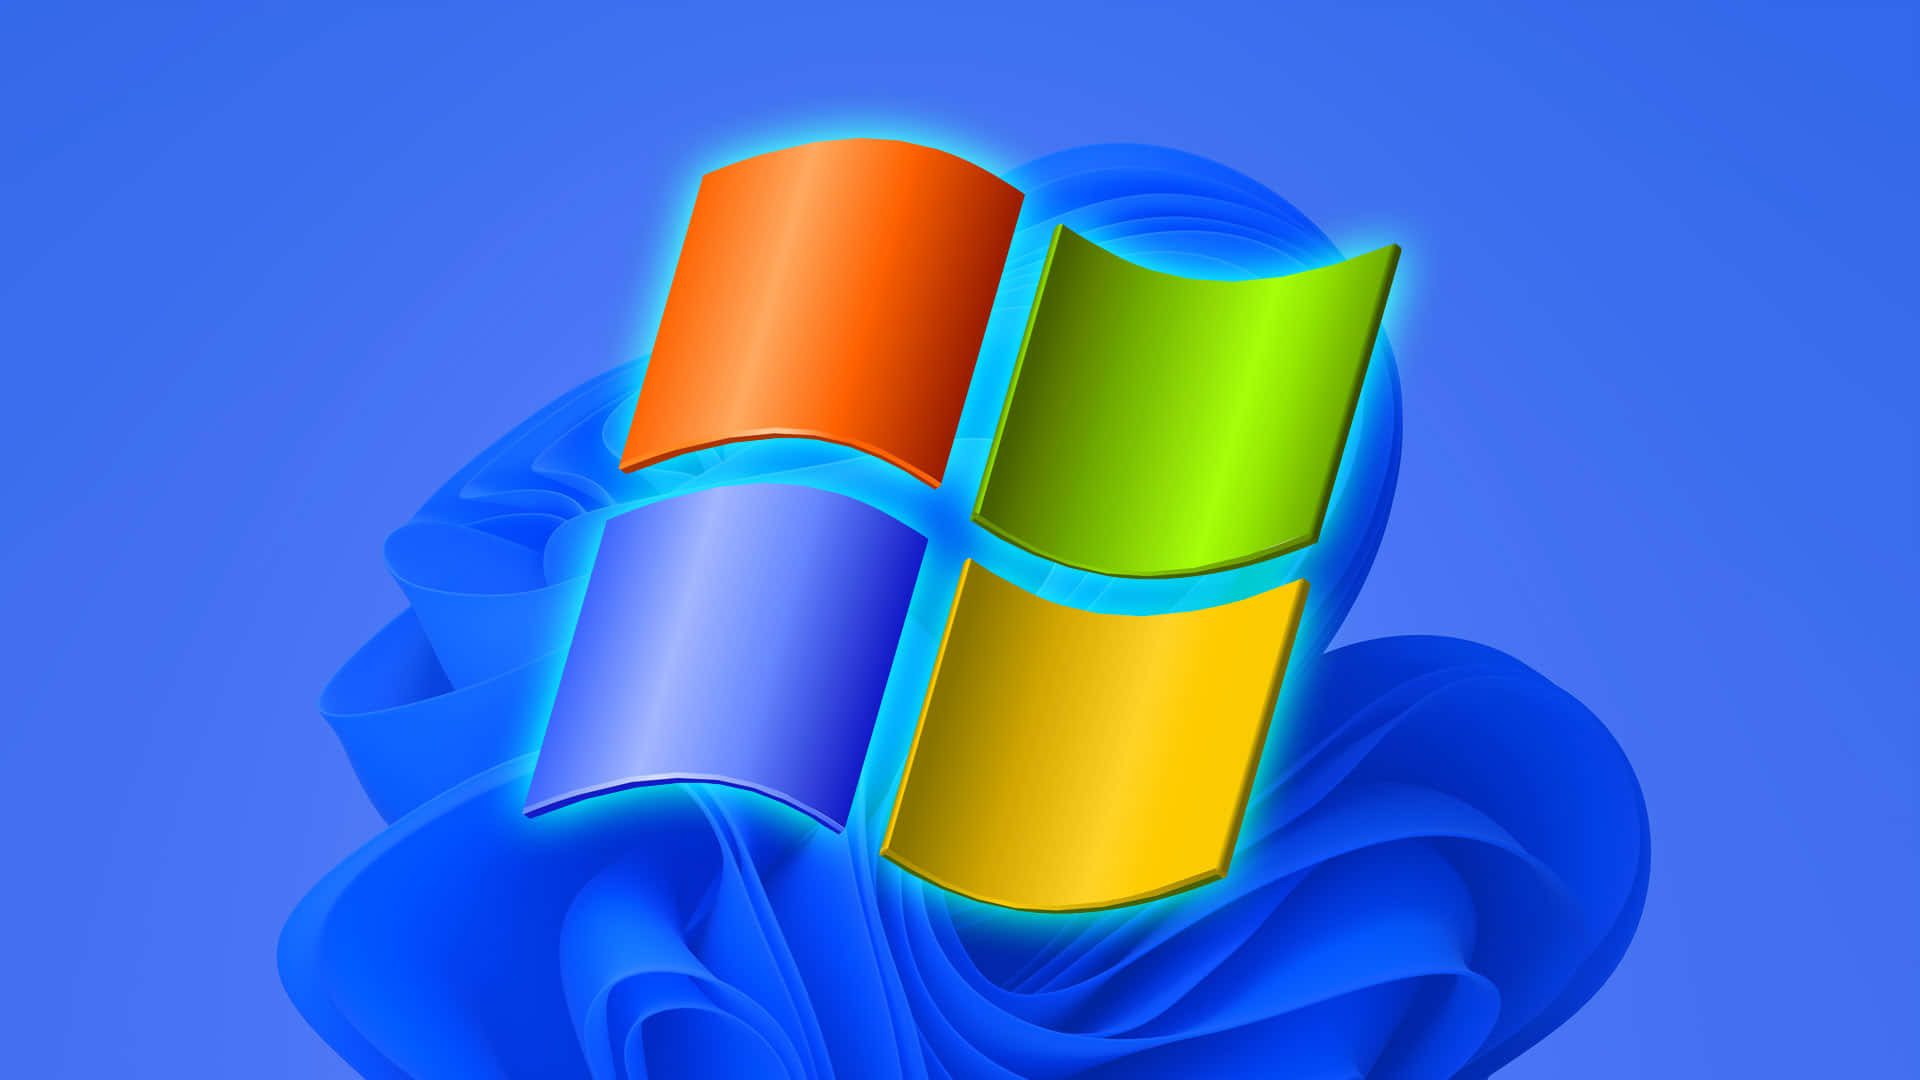 Windows XP Logo Wallpaper